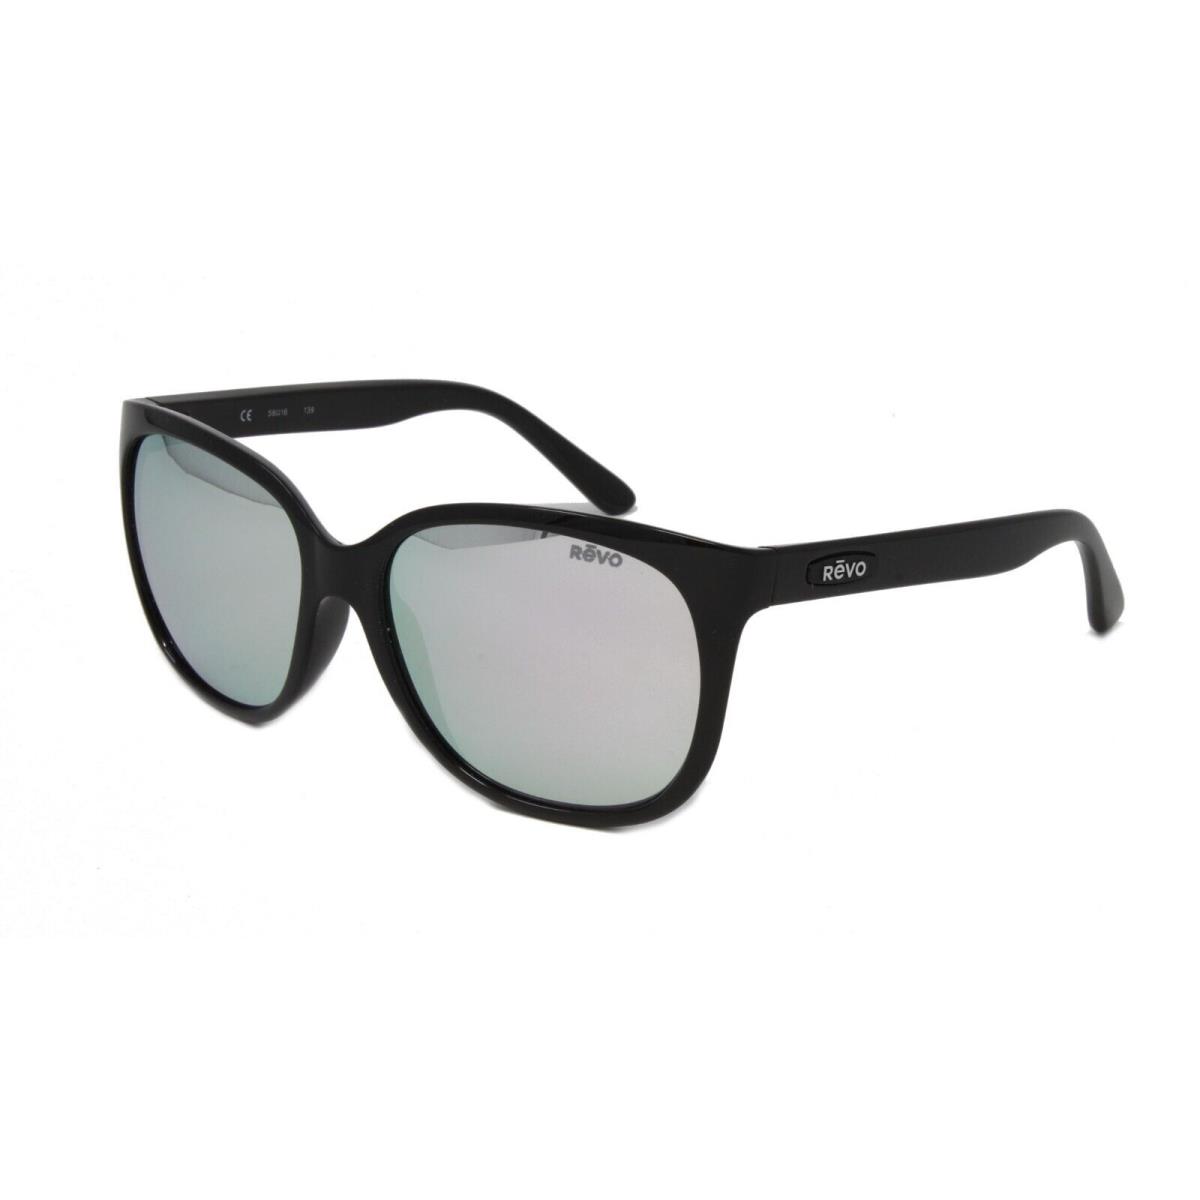 Revo Sunglasses Grand Classic RE4051 01ST Black Polarized Lens 58mm - Frame: Black, Lens: